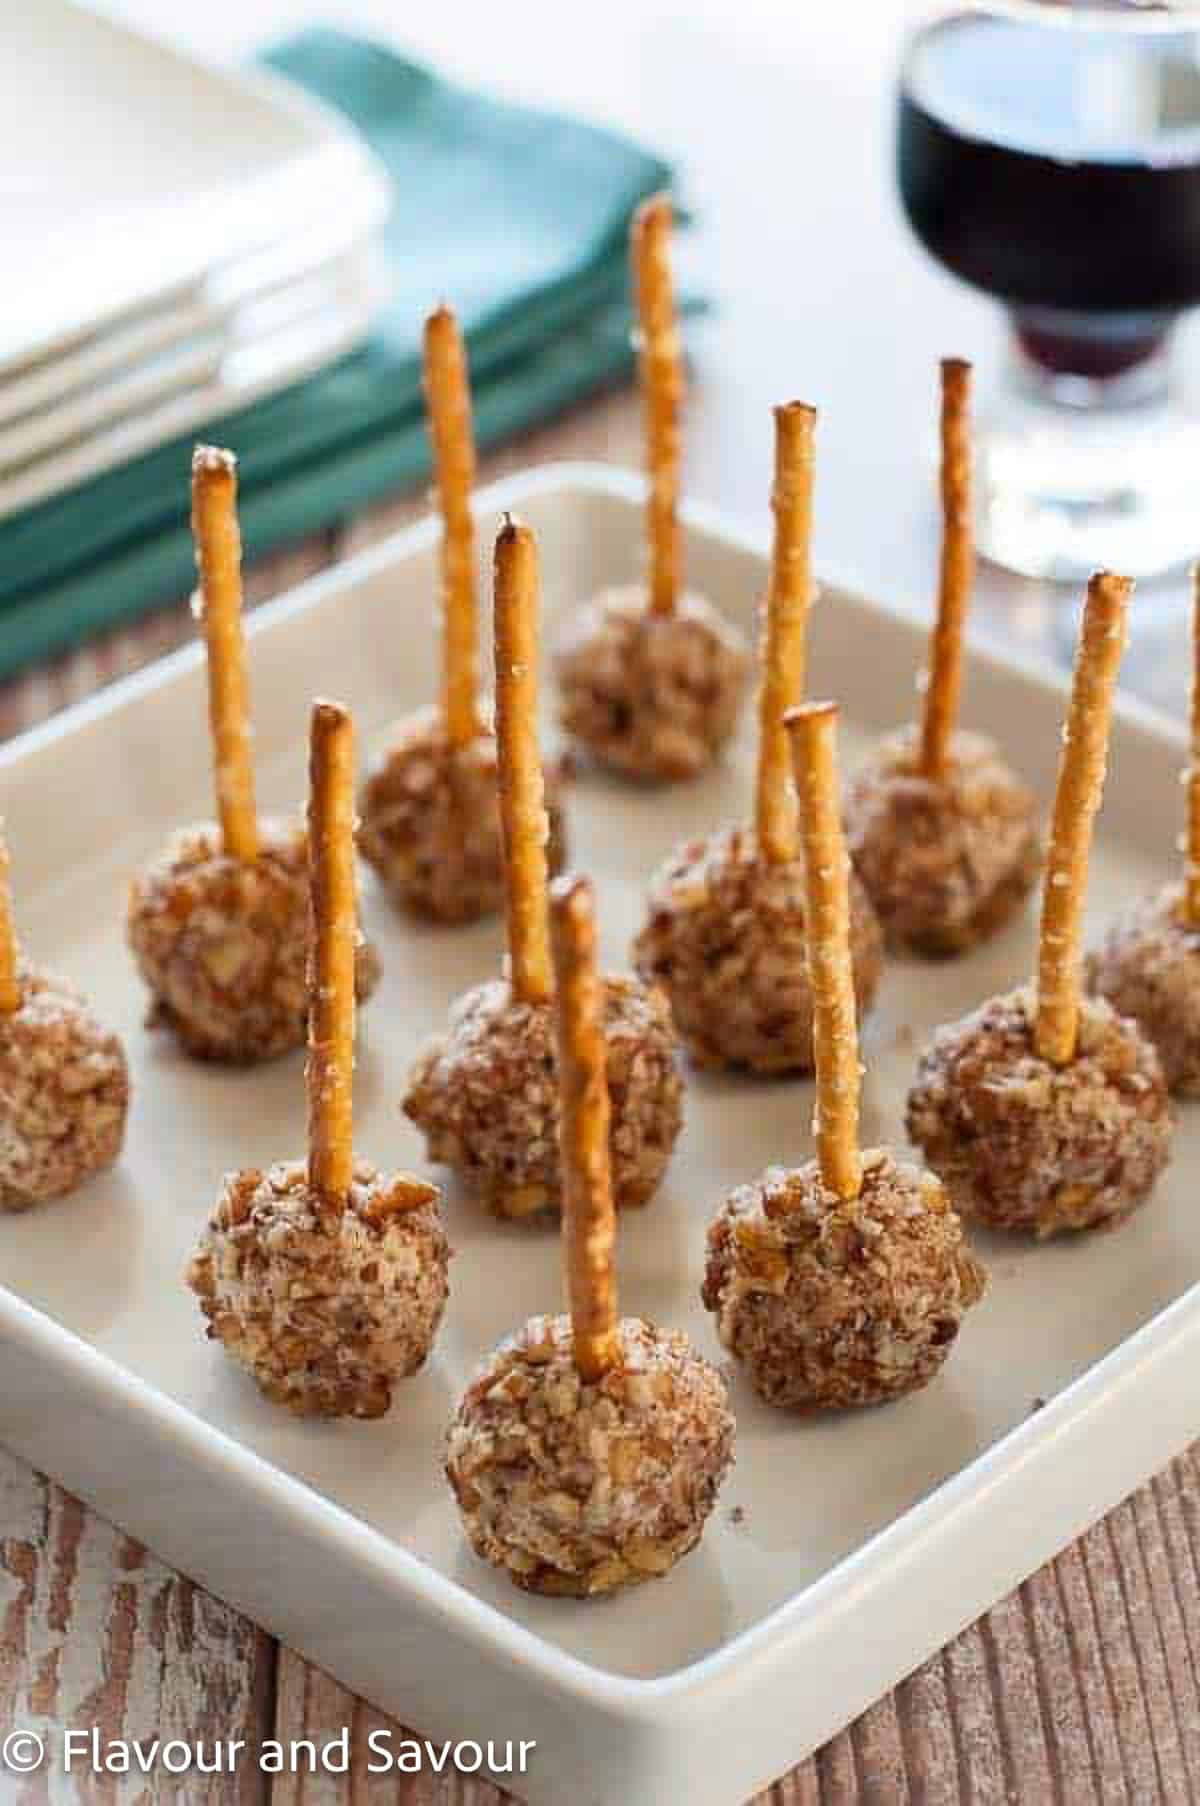 Mini goat cheese balls with pretzel sticks.